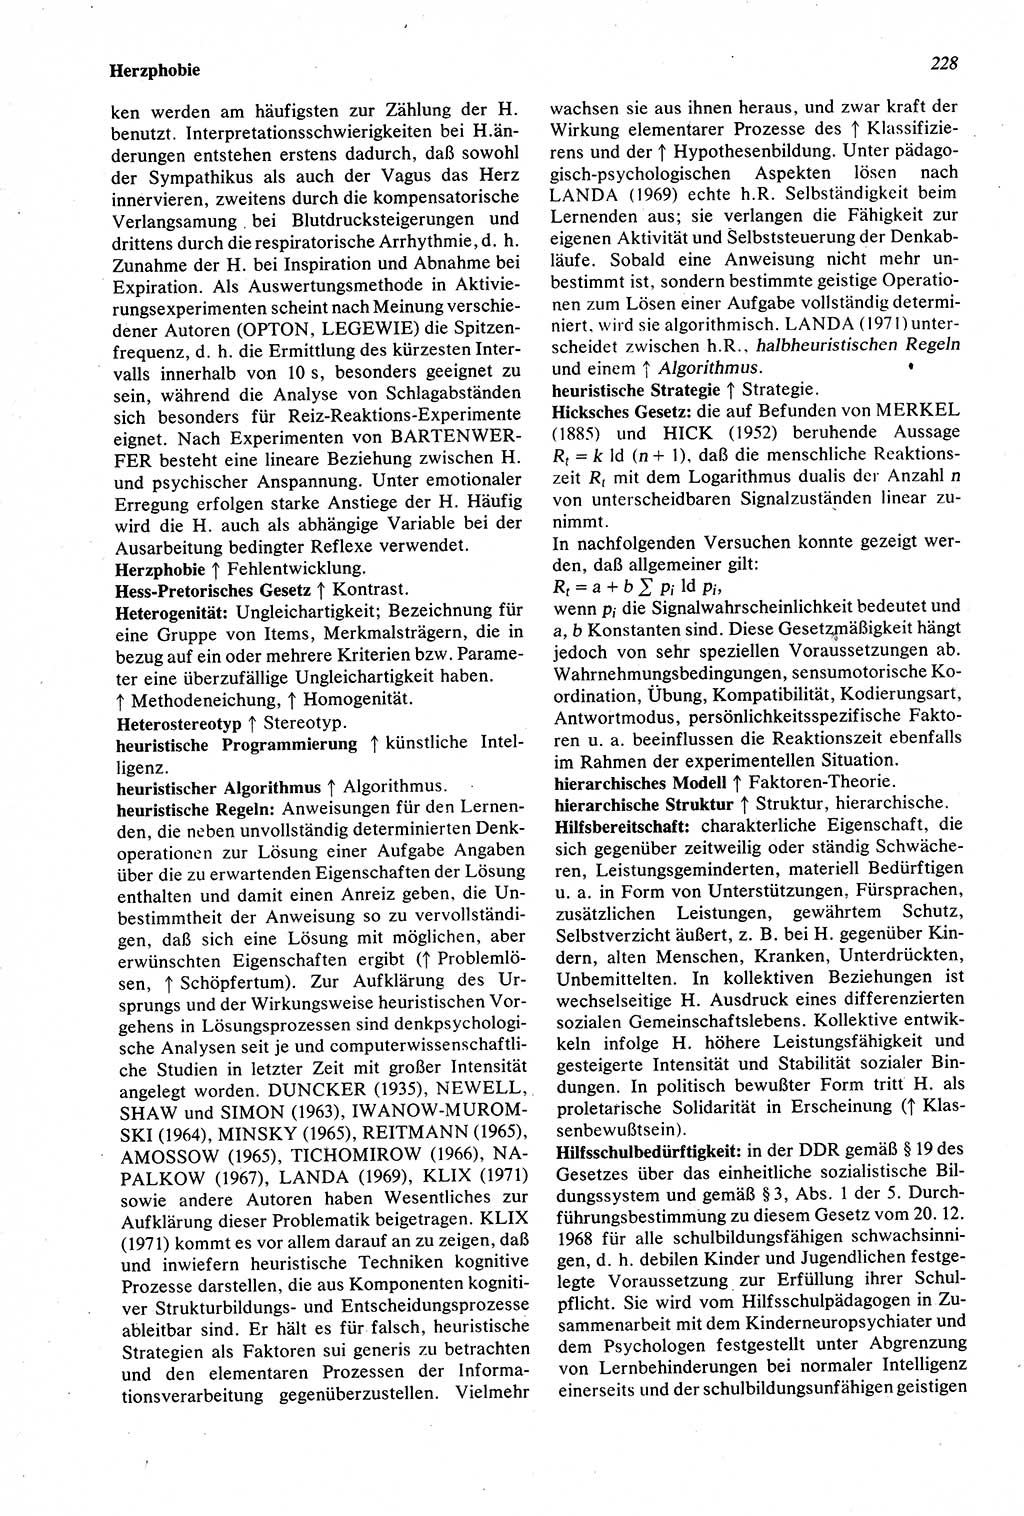 Wörterbuch der Psychologie [Deutsche Demokratische Republik (DDR)] 1976, Seite 228 (Wb. Psych. DDR 1976, S. 228)